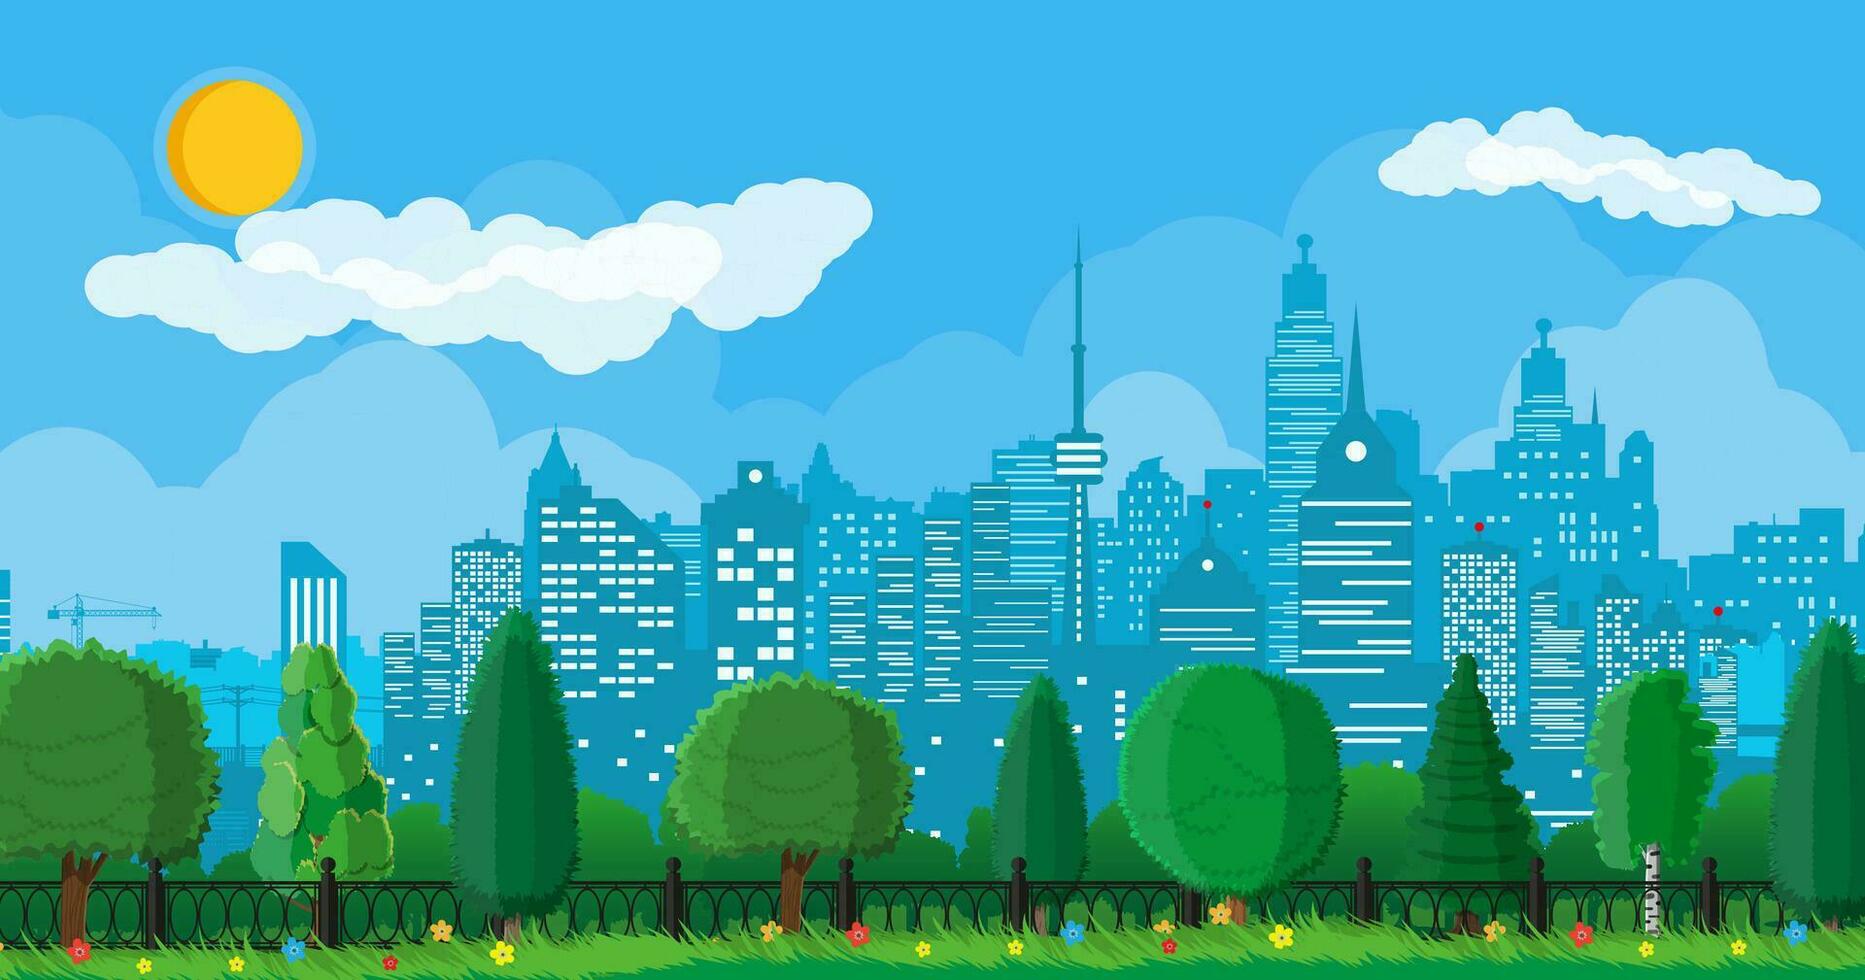 ciudad parque concepto. urbano bosque panorama con cerca. paisaje urbano con edificios y arboles cielo con nubes y Dom. ocio hora en verano ciudad parque. vector ilustración en plano estilo